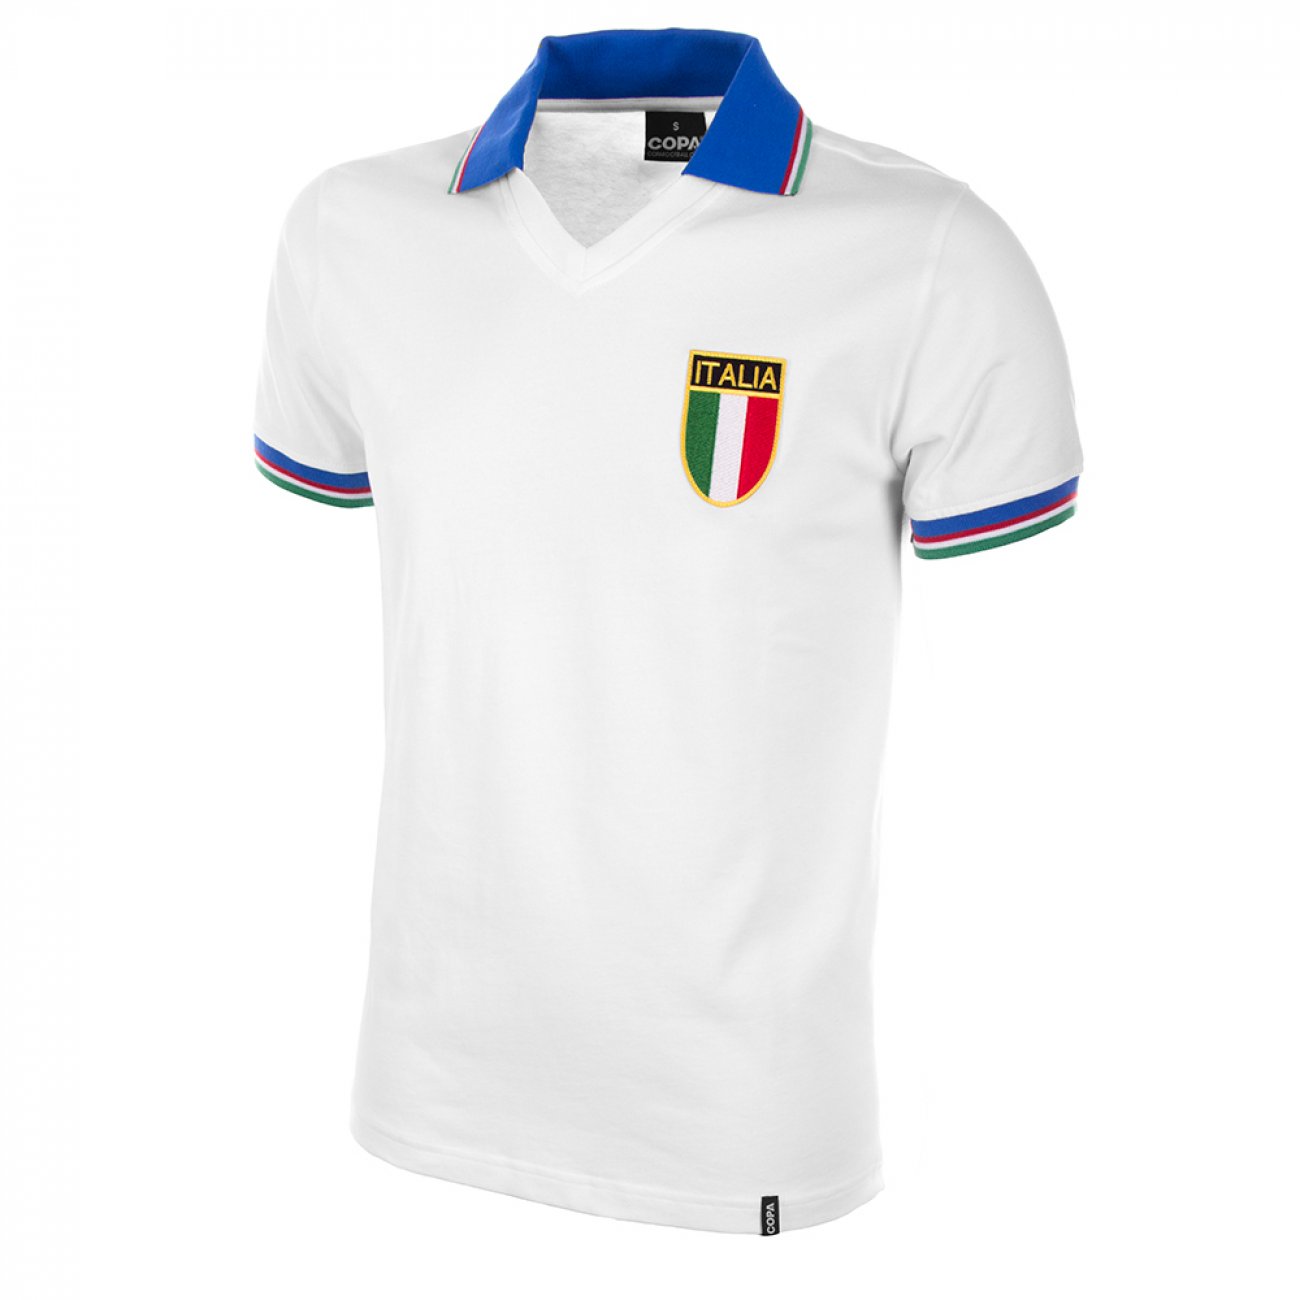 Maglia Italia 1982 bianca regalo calcio